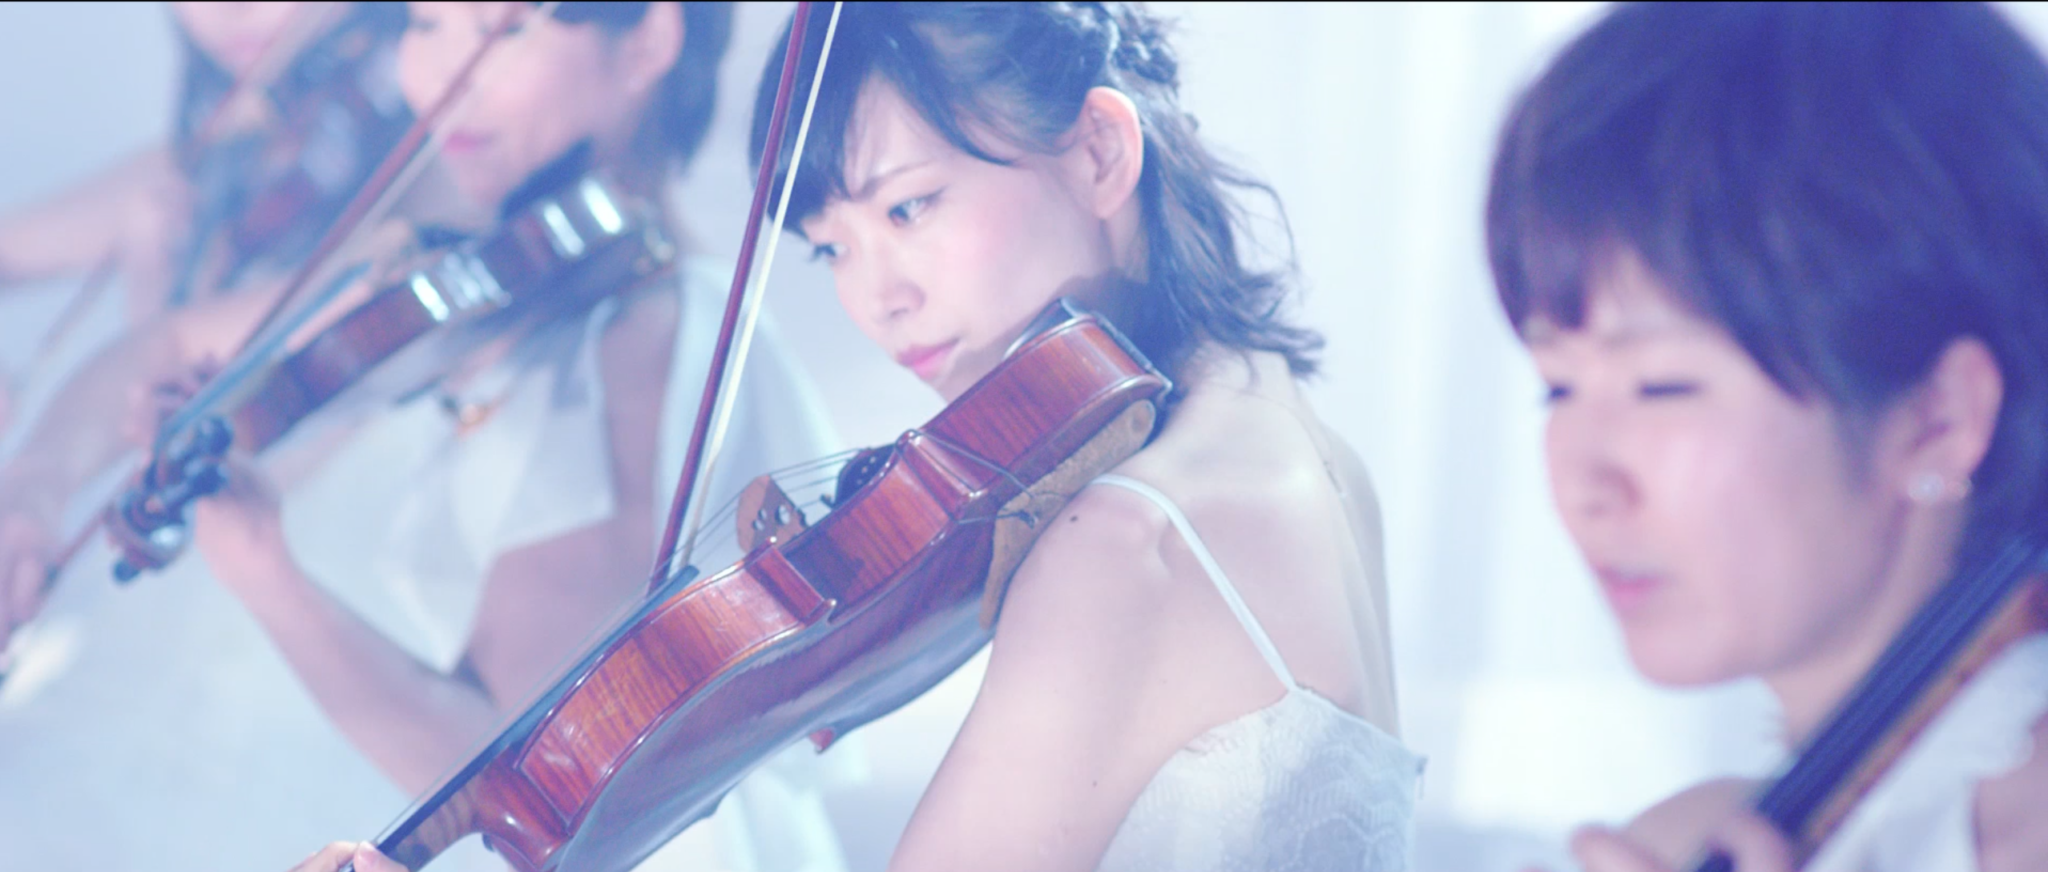 美人演奏家が安室奈美恵さんのPV撮影に出演しました